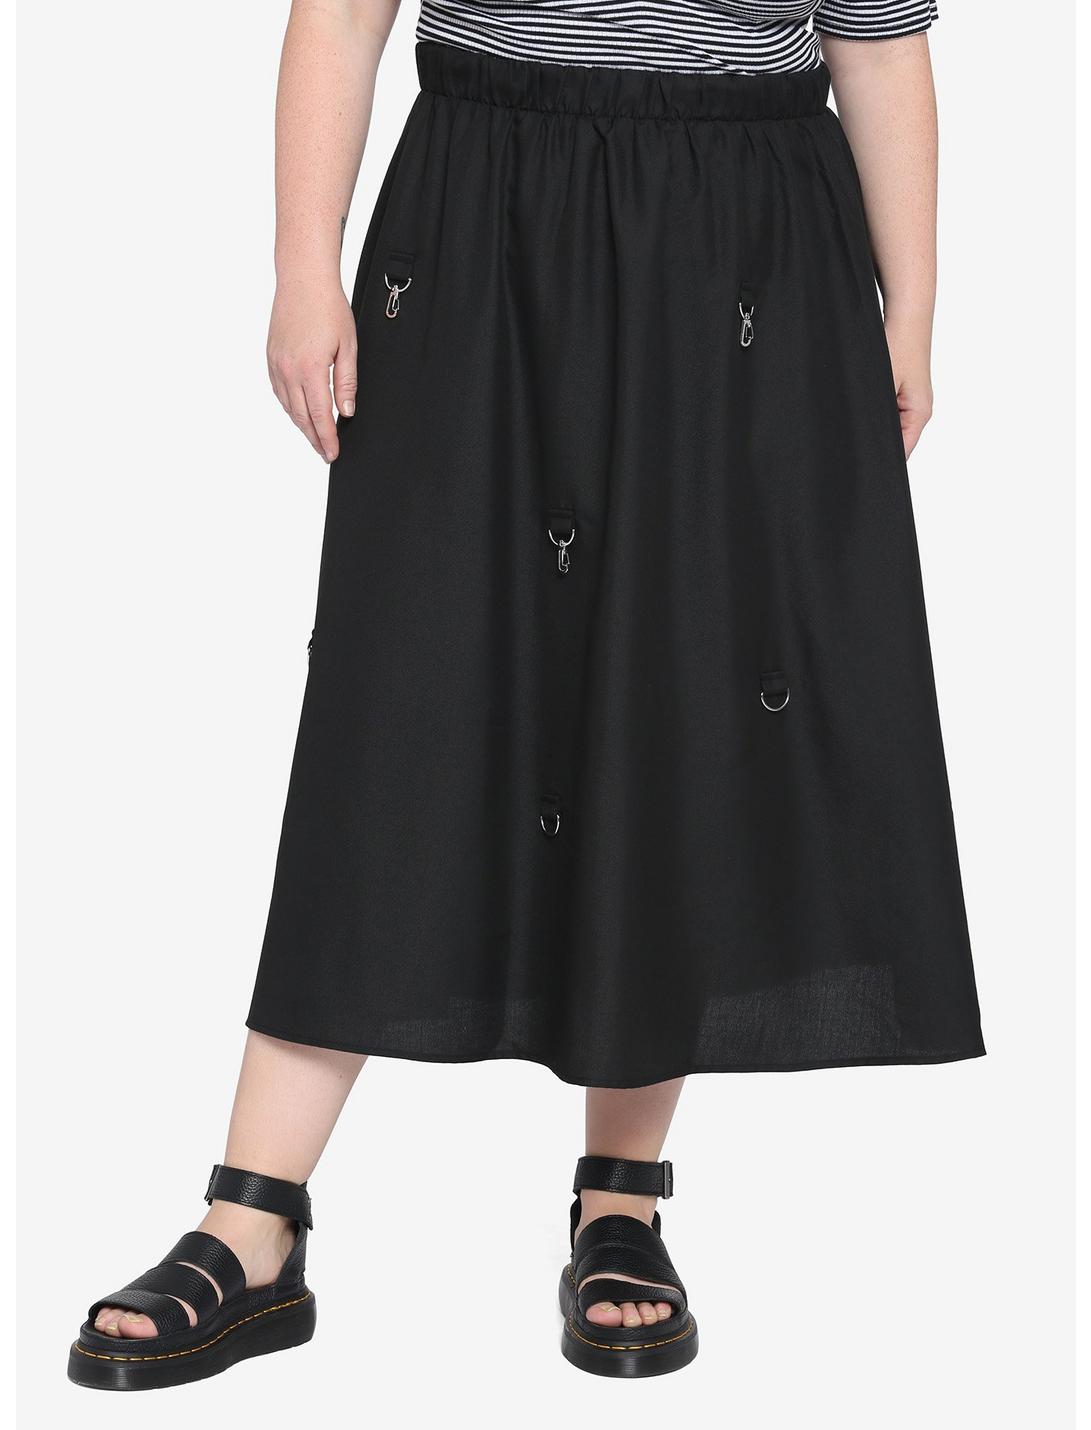 Black D-Ring Clasp Midi Skirt Plus Size | Hot Topic